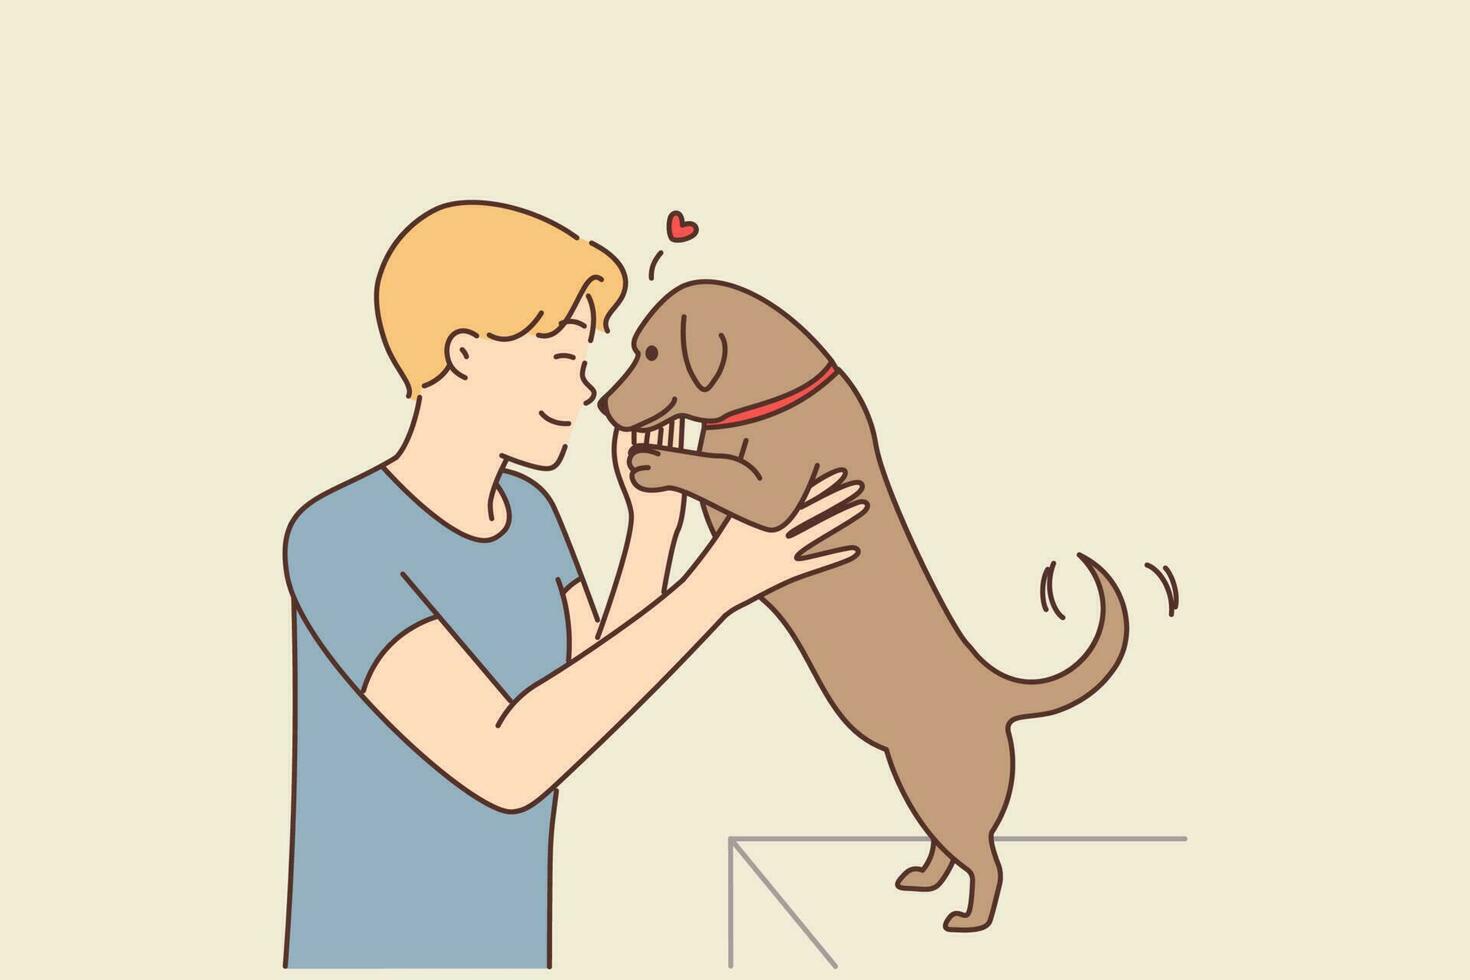 gelukkig vent spelen met klein puppy binnenshuis. glimlachen jong Mens knuffel en knuffelen schattig hond tonen liefde en zorg voor huisdier. vector illustratie.